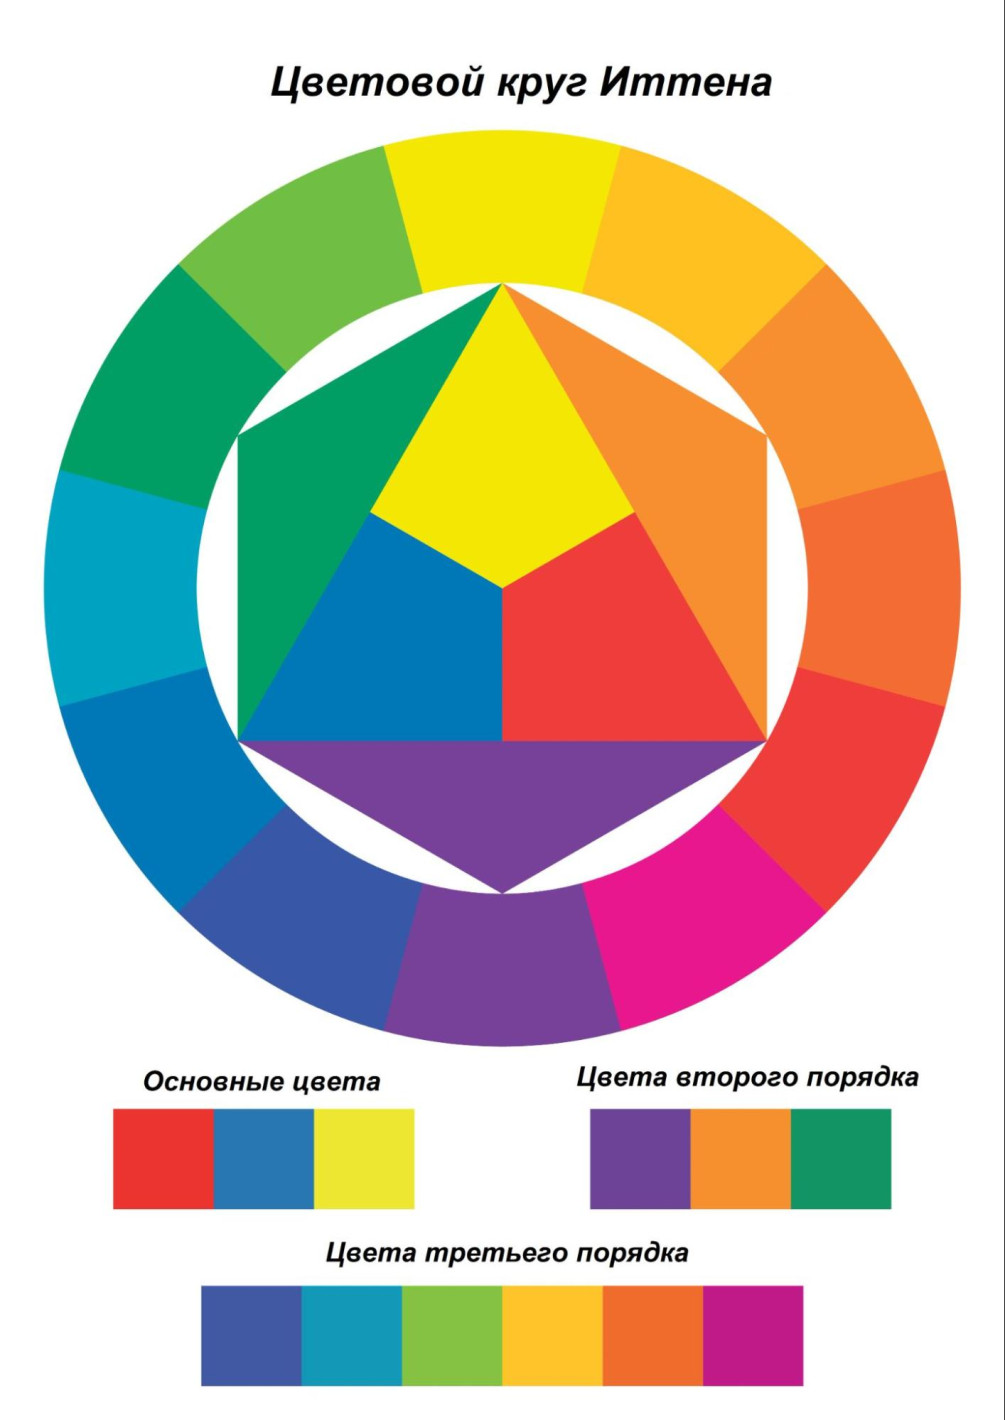 «Психология цвета в интерьере и значение основных цветов»